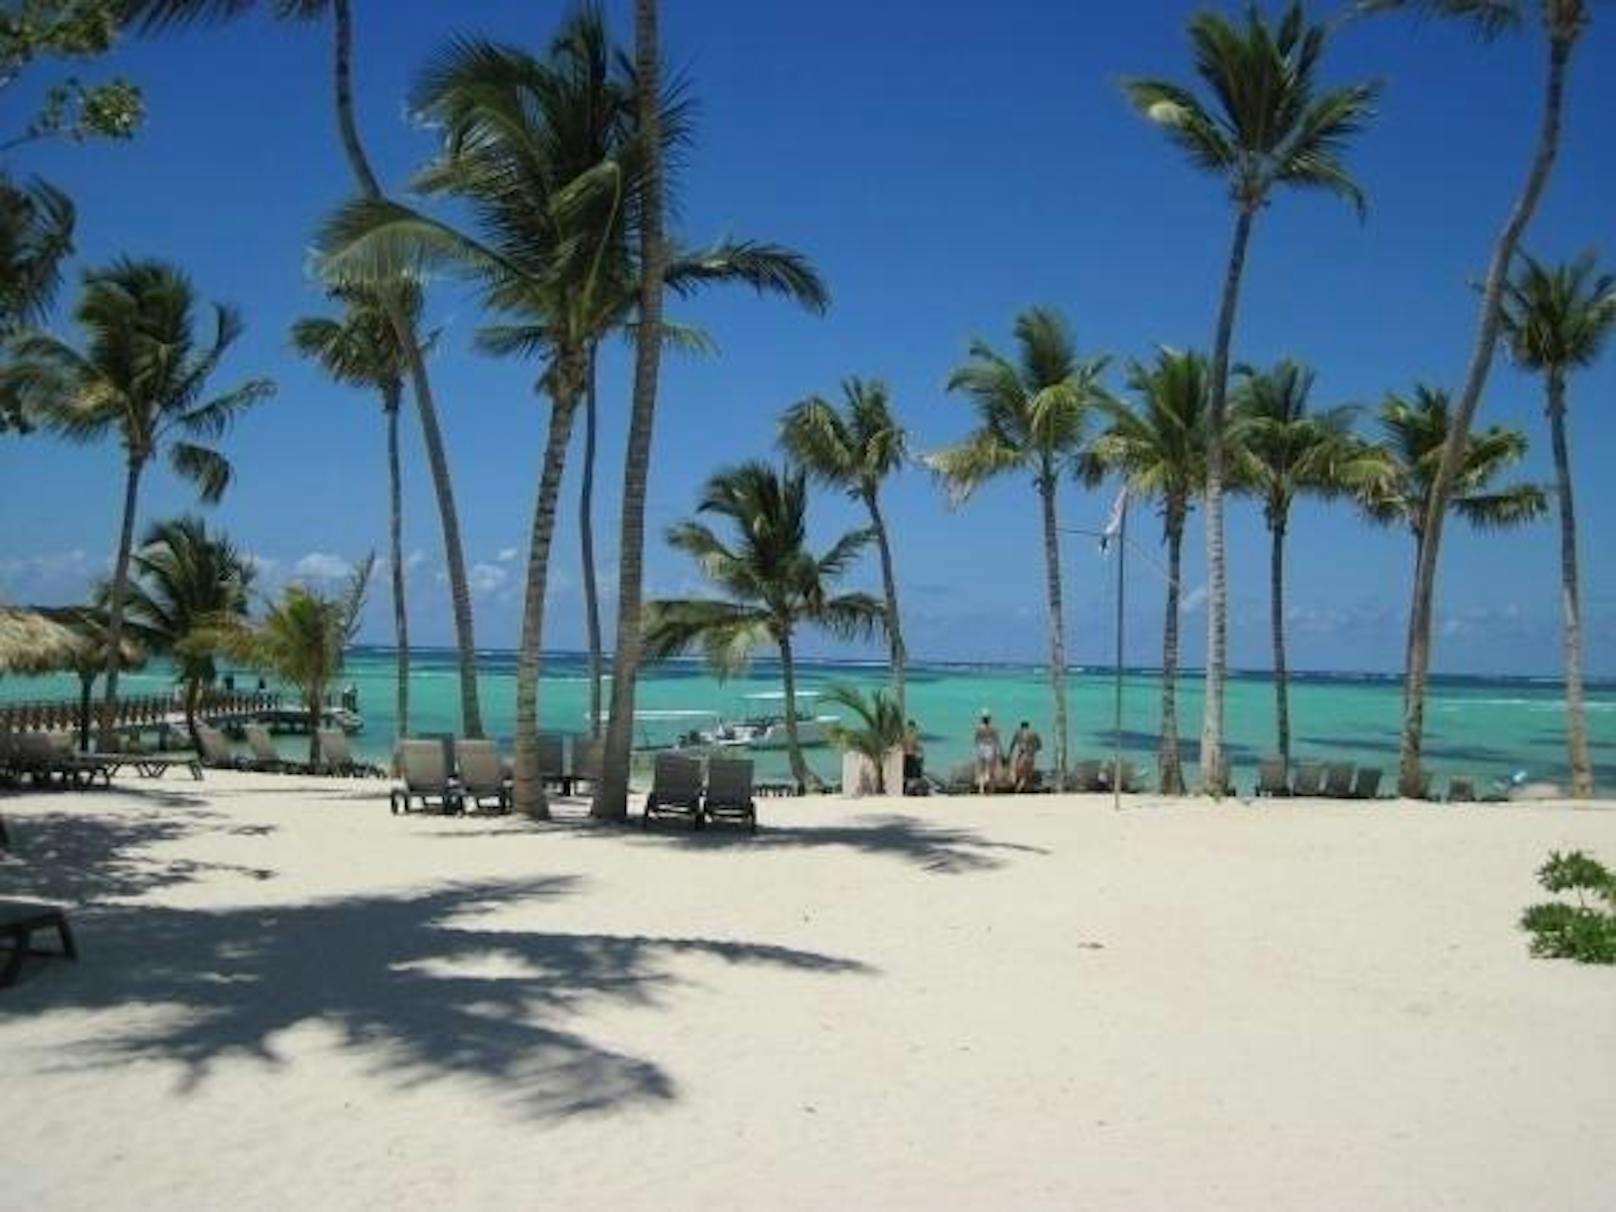 <b>Platz neun: Bavaro Beach, Punta Cana, Dominikanische Republik:</b> "Schöner, langer, feinsandiger Strand. Lange Spaziergänge sind möglich. Das Wasser ist super erfrischend", schreibt eine begeisterte Touristin.